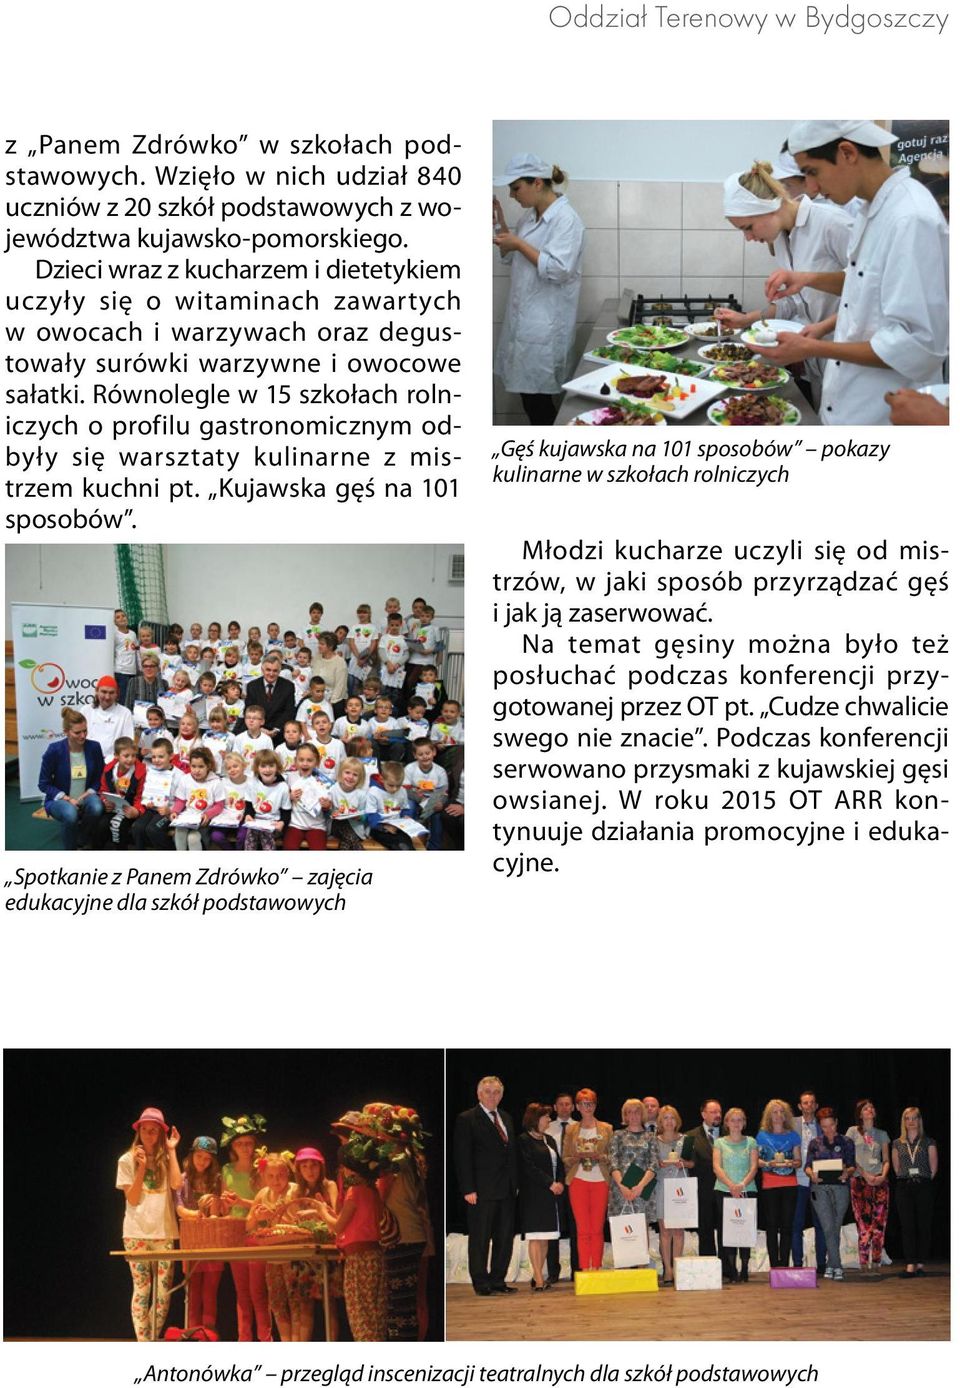 Równolegle w 15 szkołach rolniczych o profilu gastronomicznym odbyły się warsztaty kulinarne z mistrzem kuchni pt. Kujawska gęś na 101 sposobów.